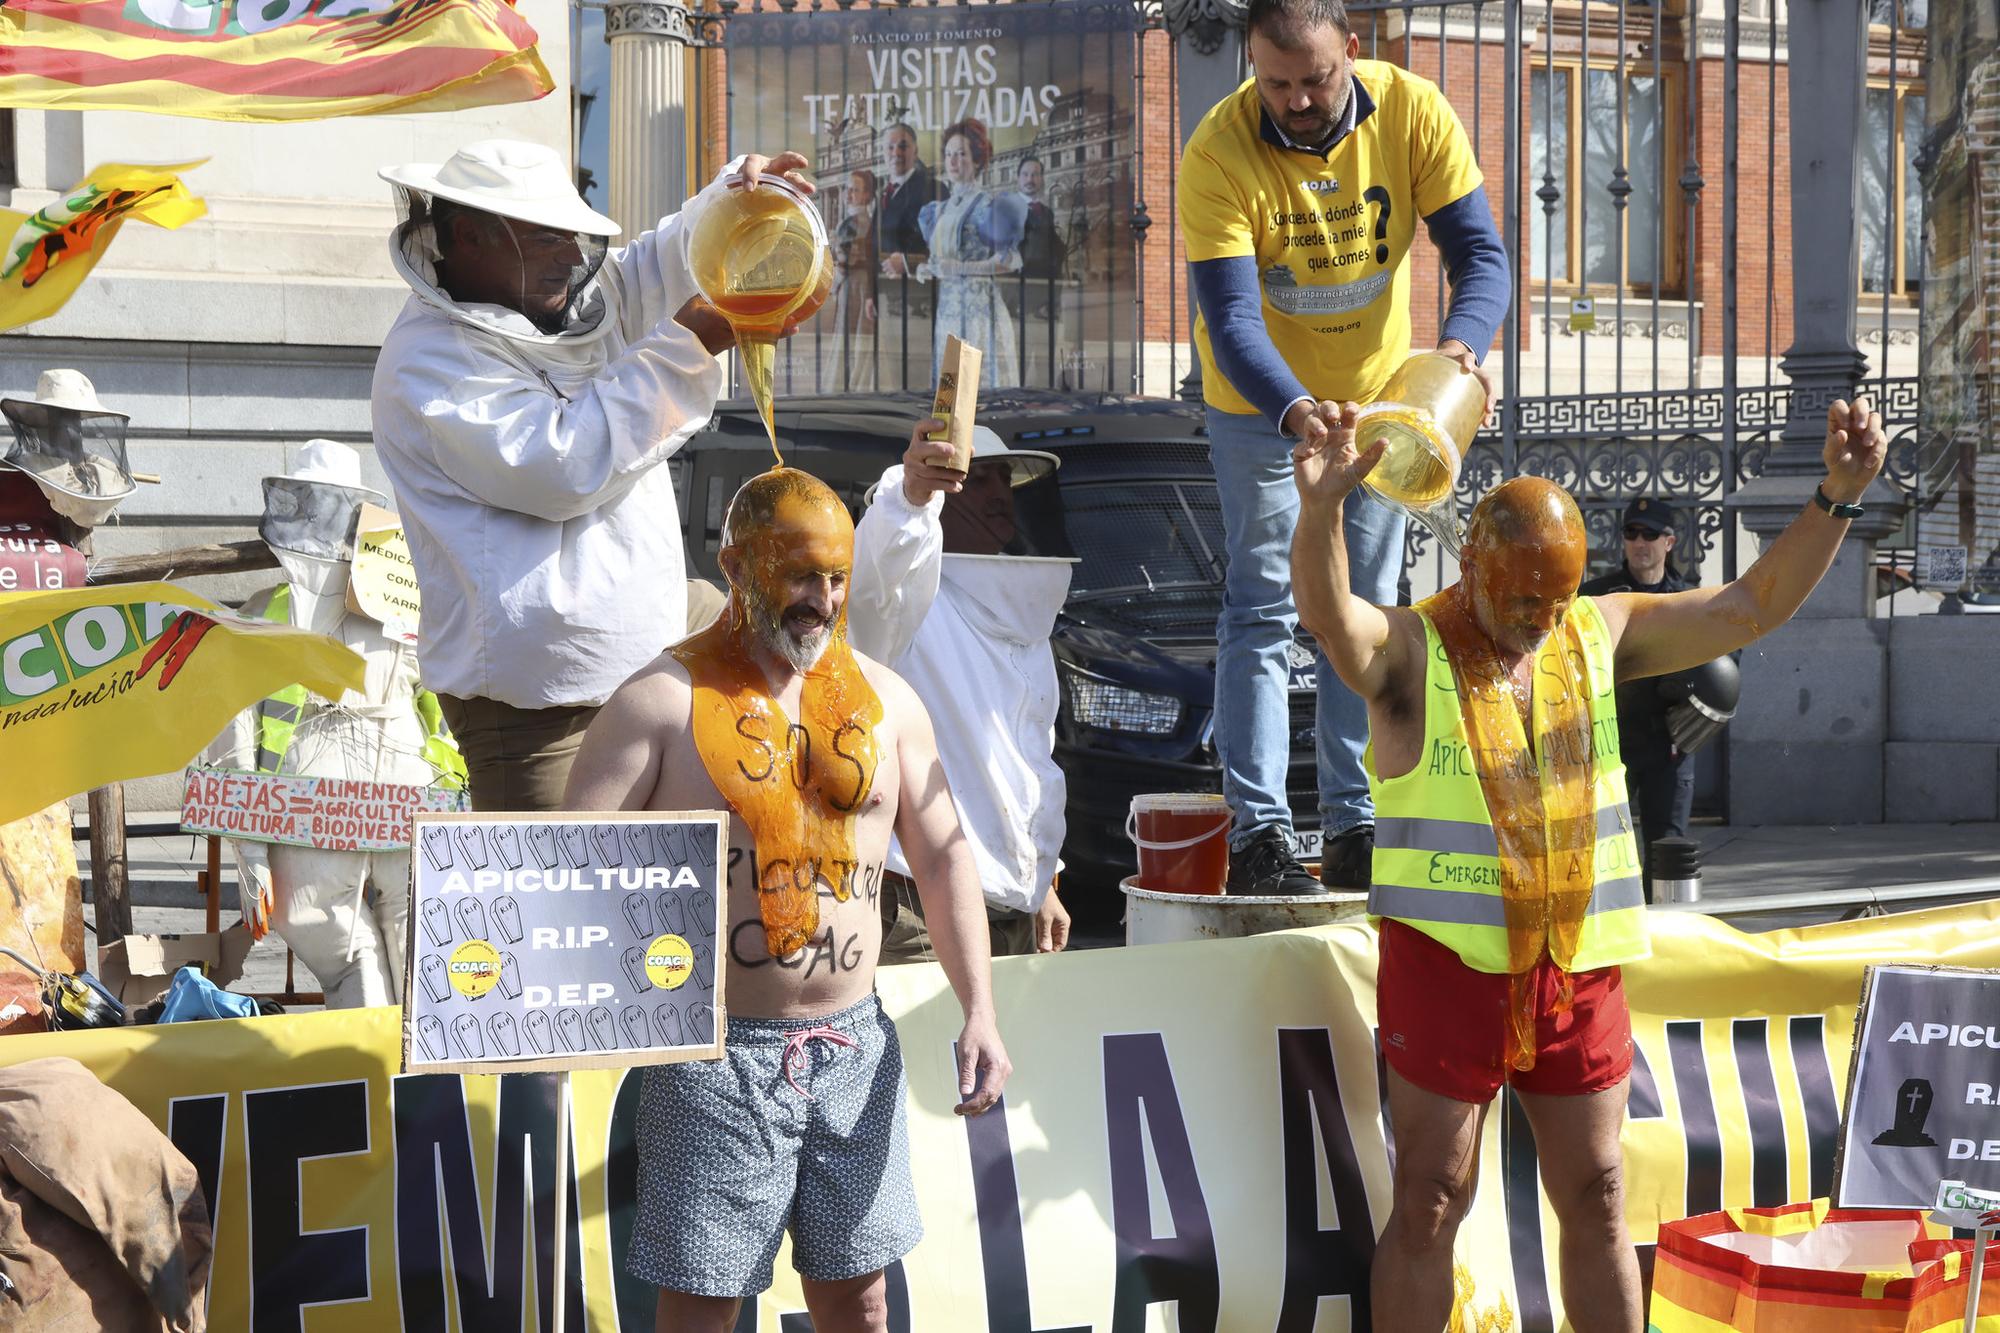 Protesta UPA y COAG miel fraudulenta